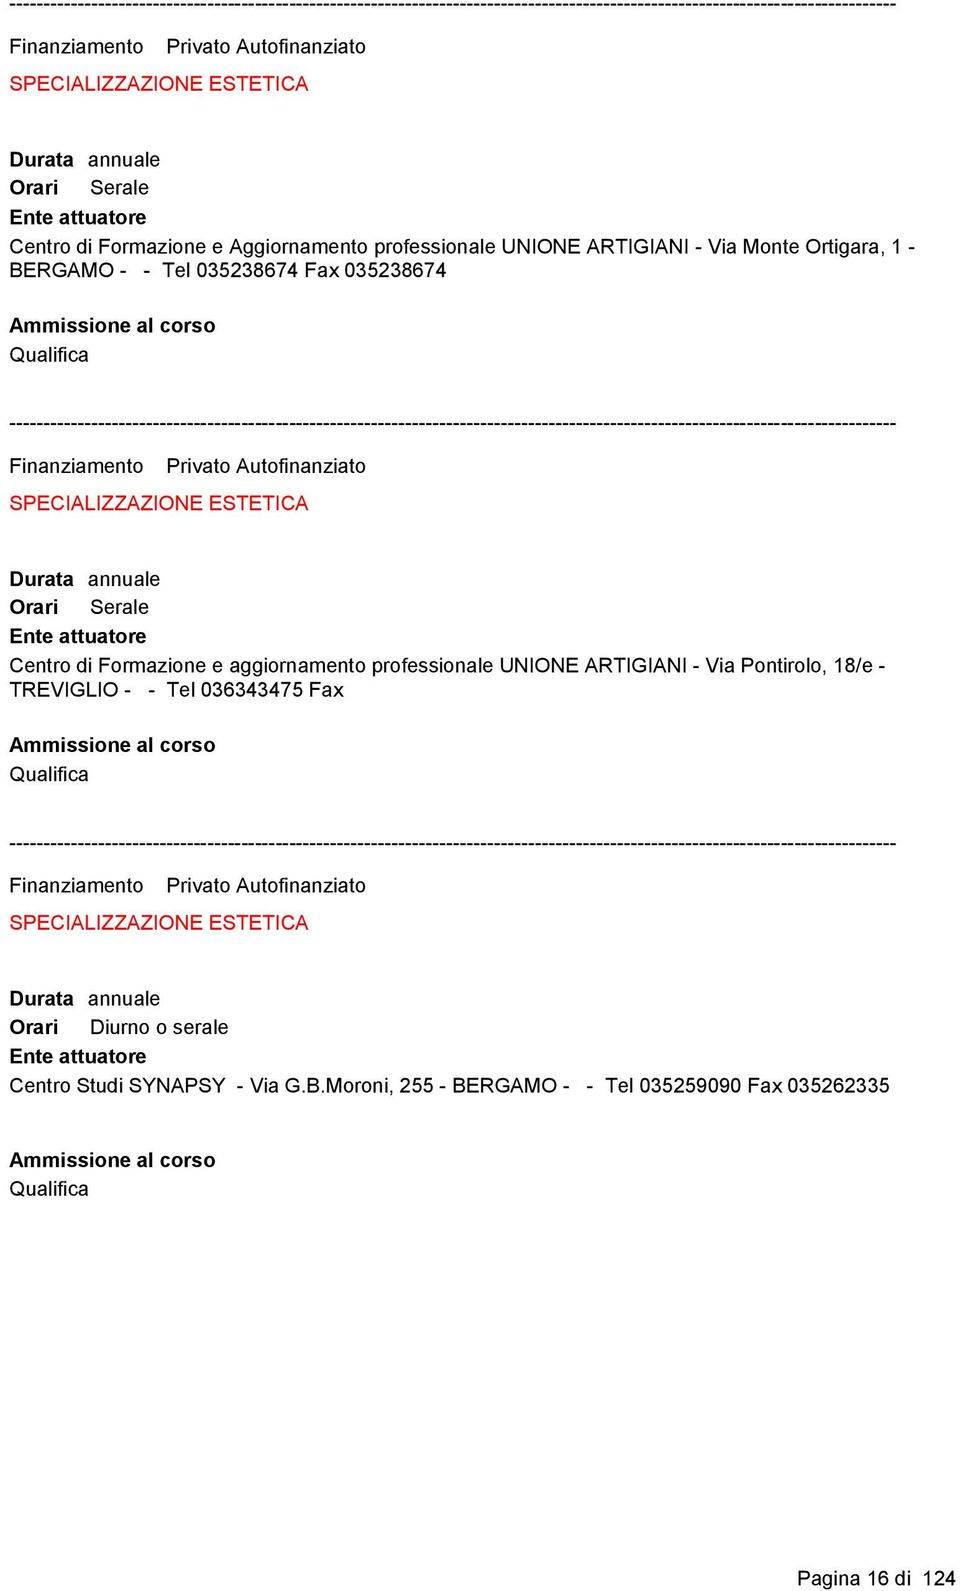 Formazione e aggiornamento professionale UNIONE ARTIGIANI - Via Pontirolo, 18/e - TREVIGLIO - - Tel 036343475 Fax Qualifica Finanziamento Privato